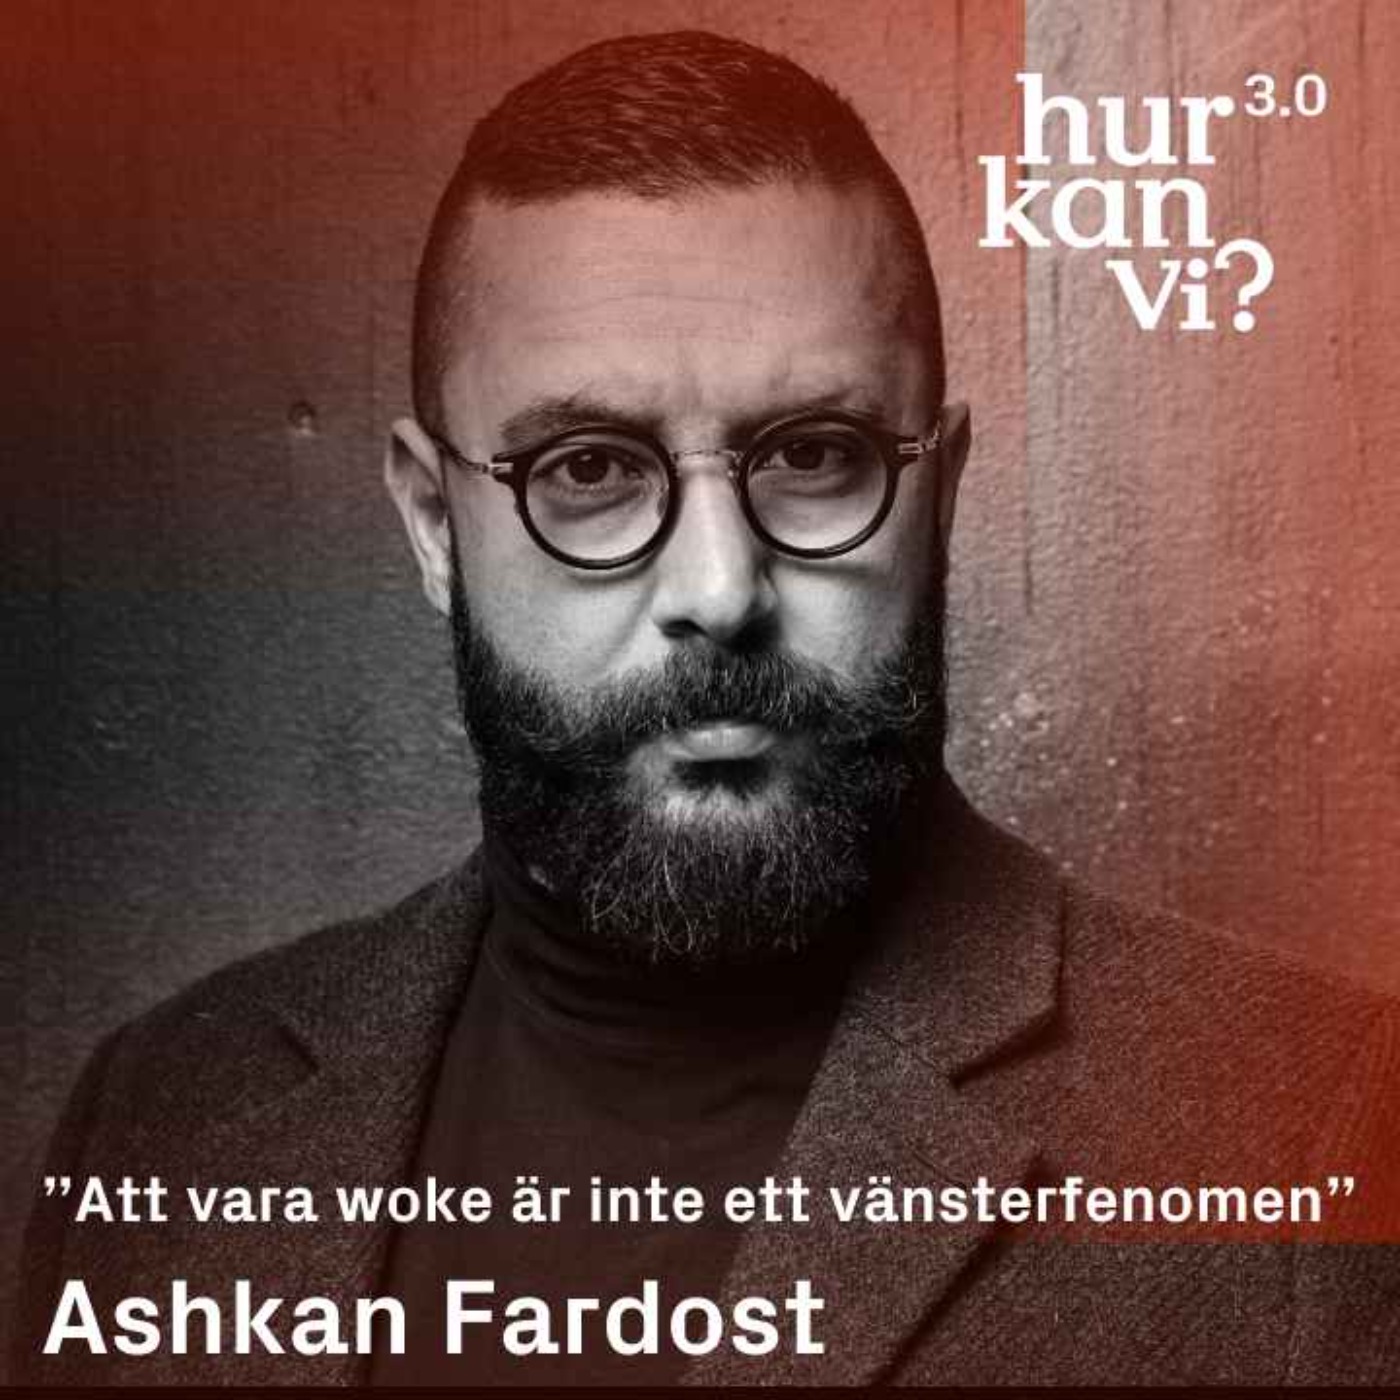 Ashkan Fardost - ”Att vara woke är inte ett vänsterfenomen”